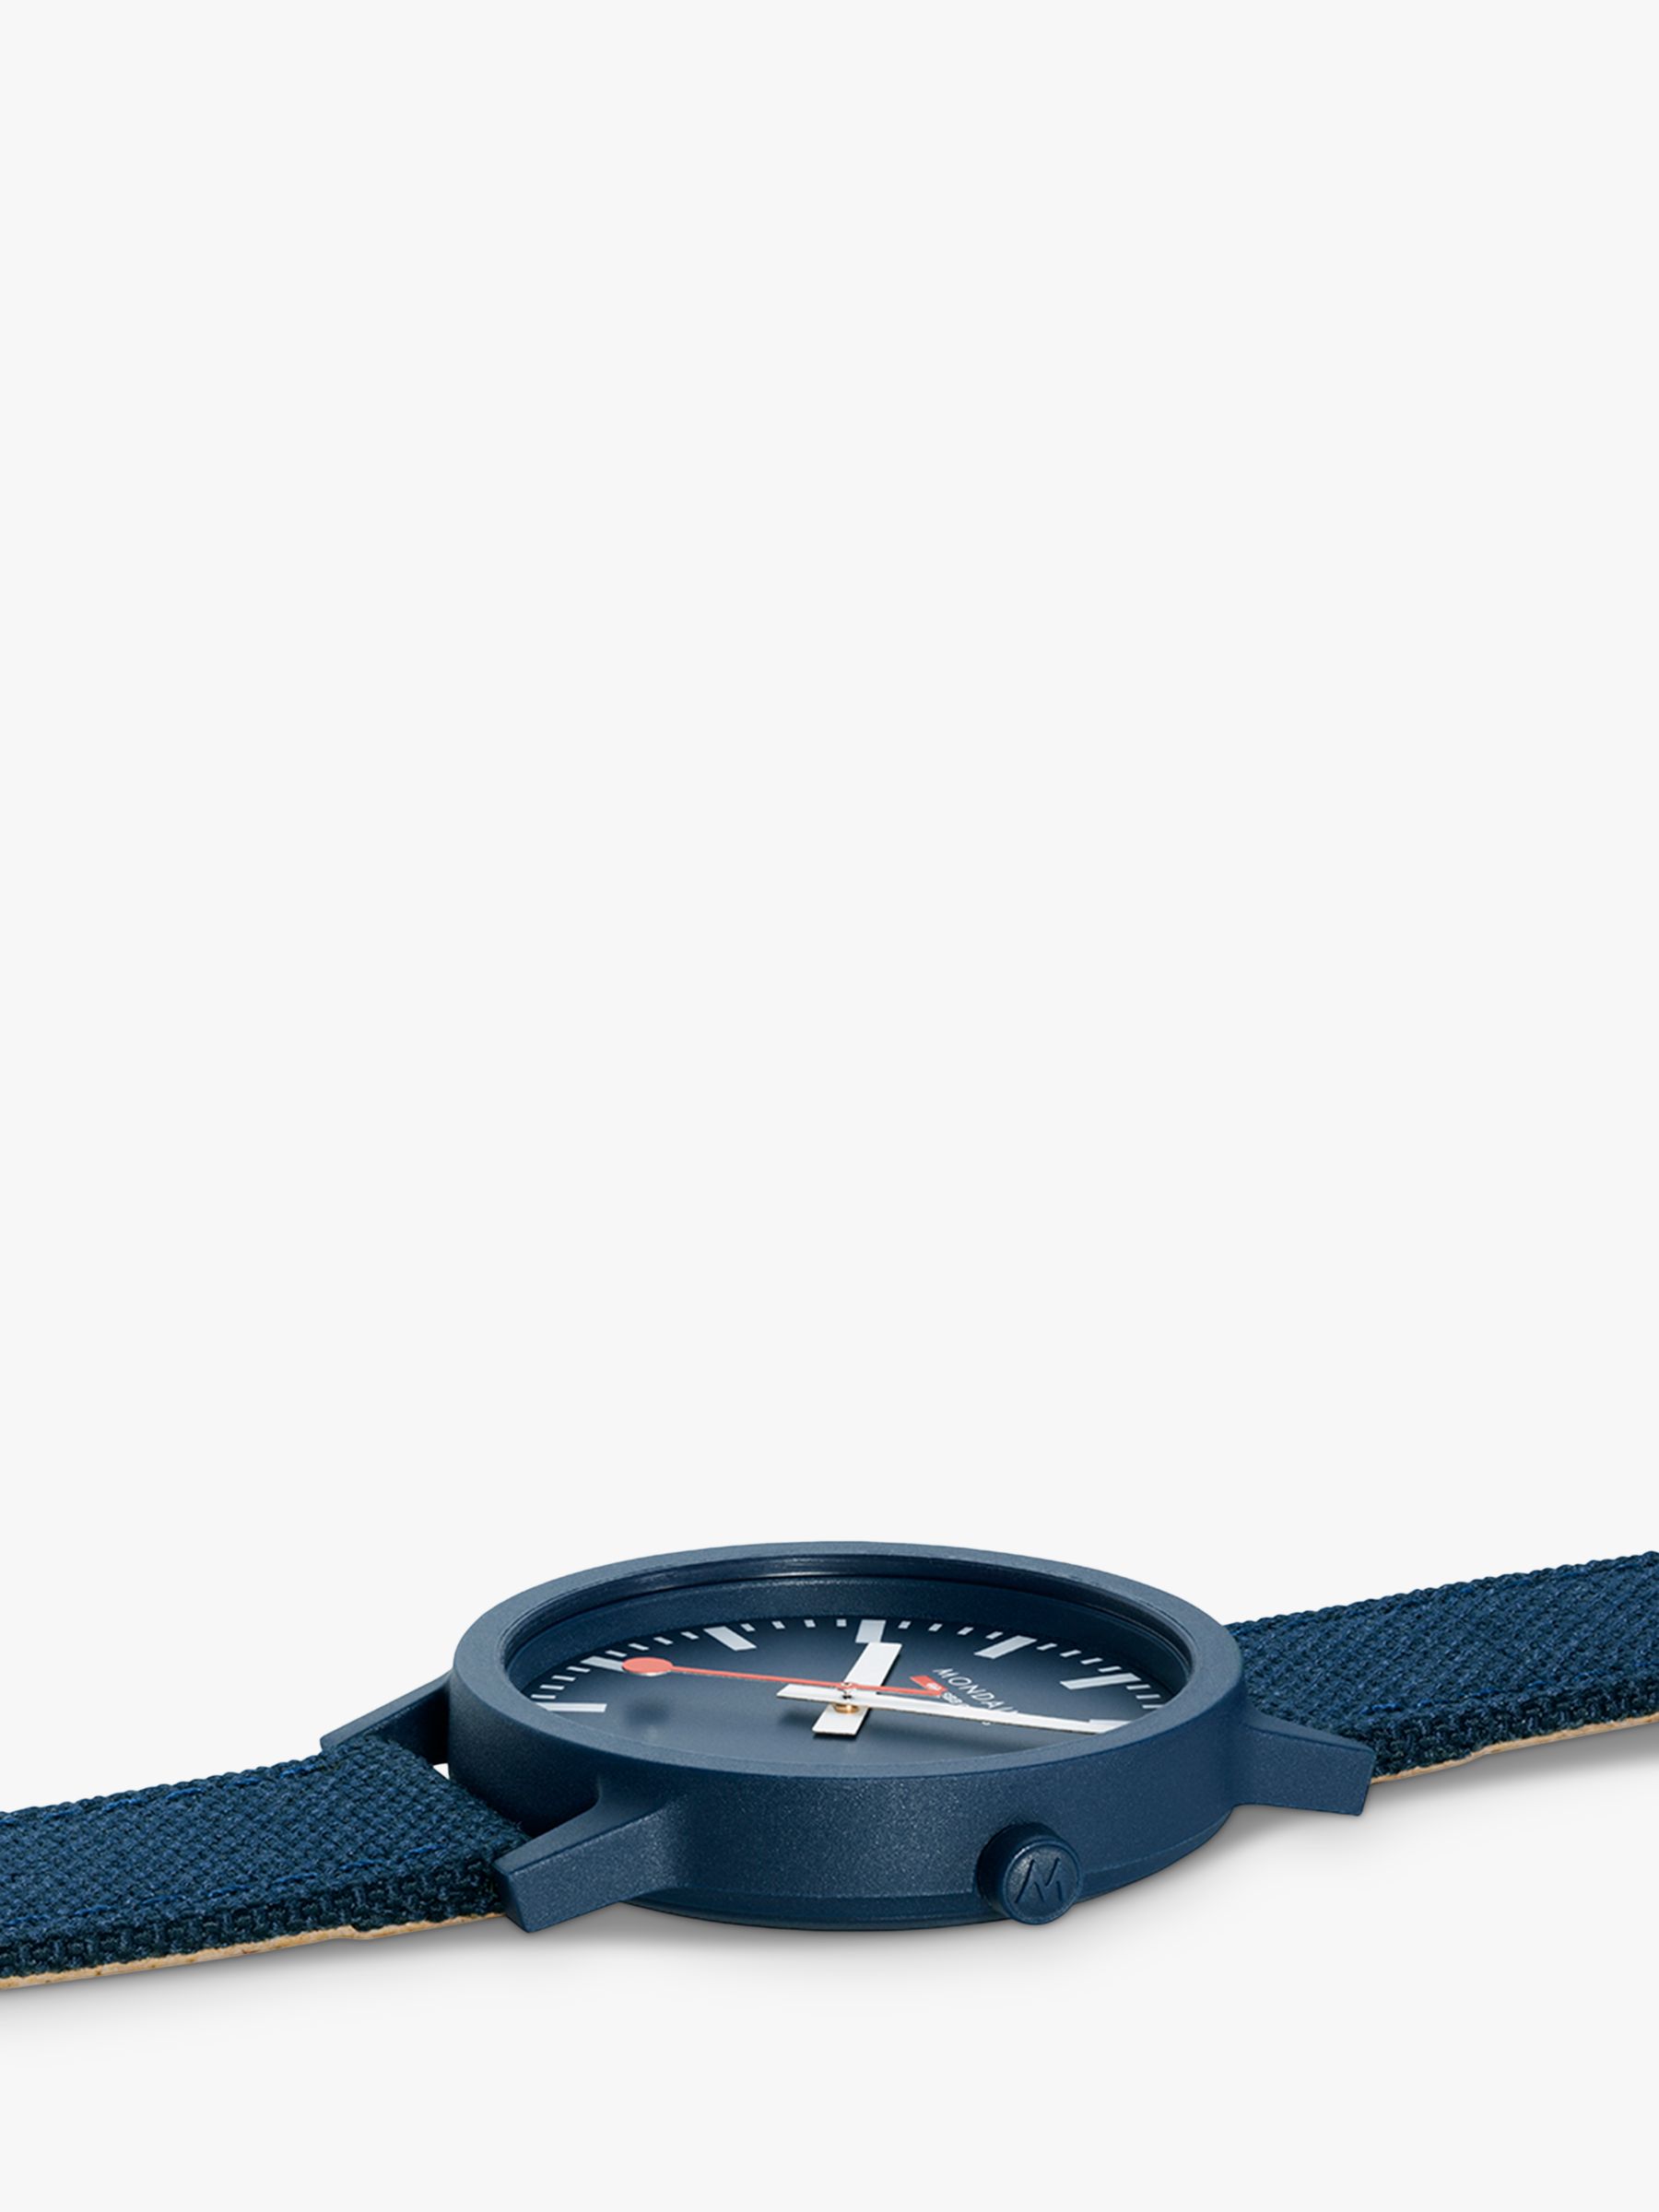 Buy Mondaine Unisex Essence Eco Textile Strap Watch, Blue MS1.41140.LD Online at johnlewis.com